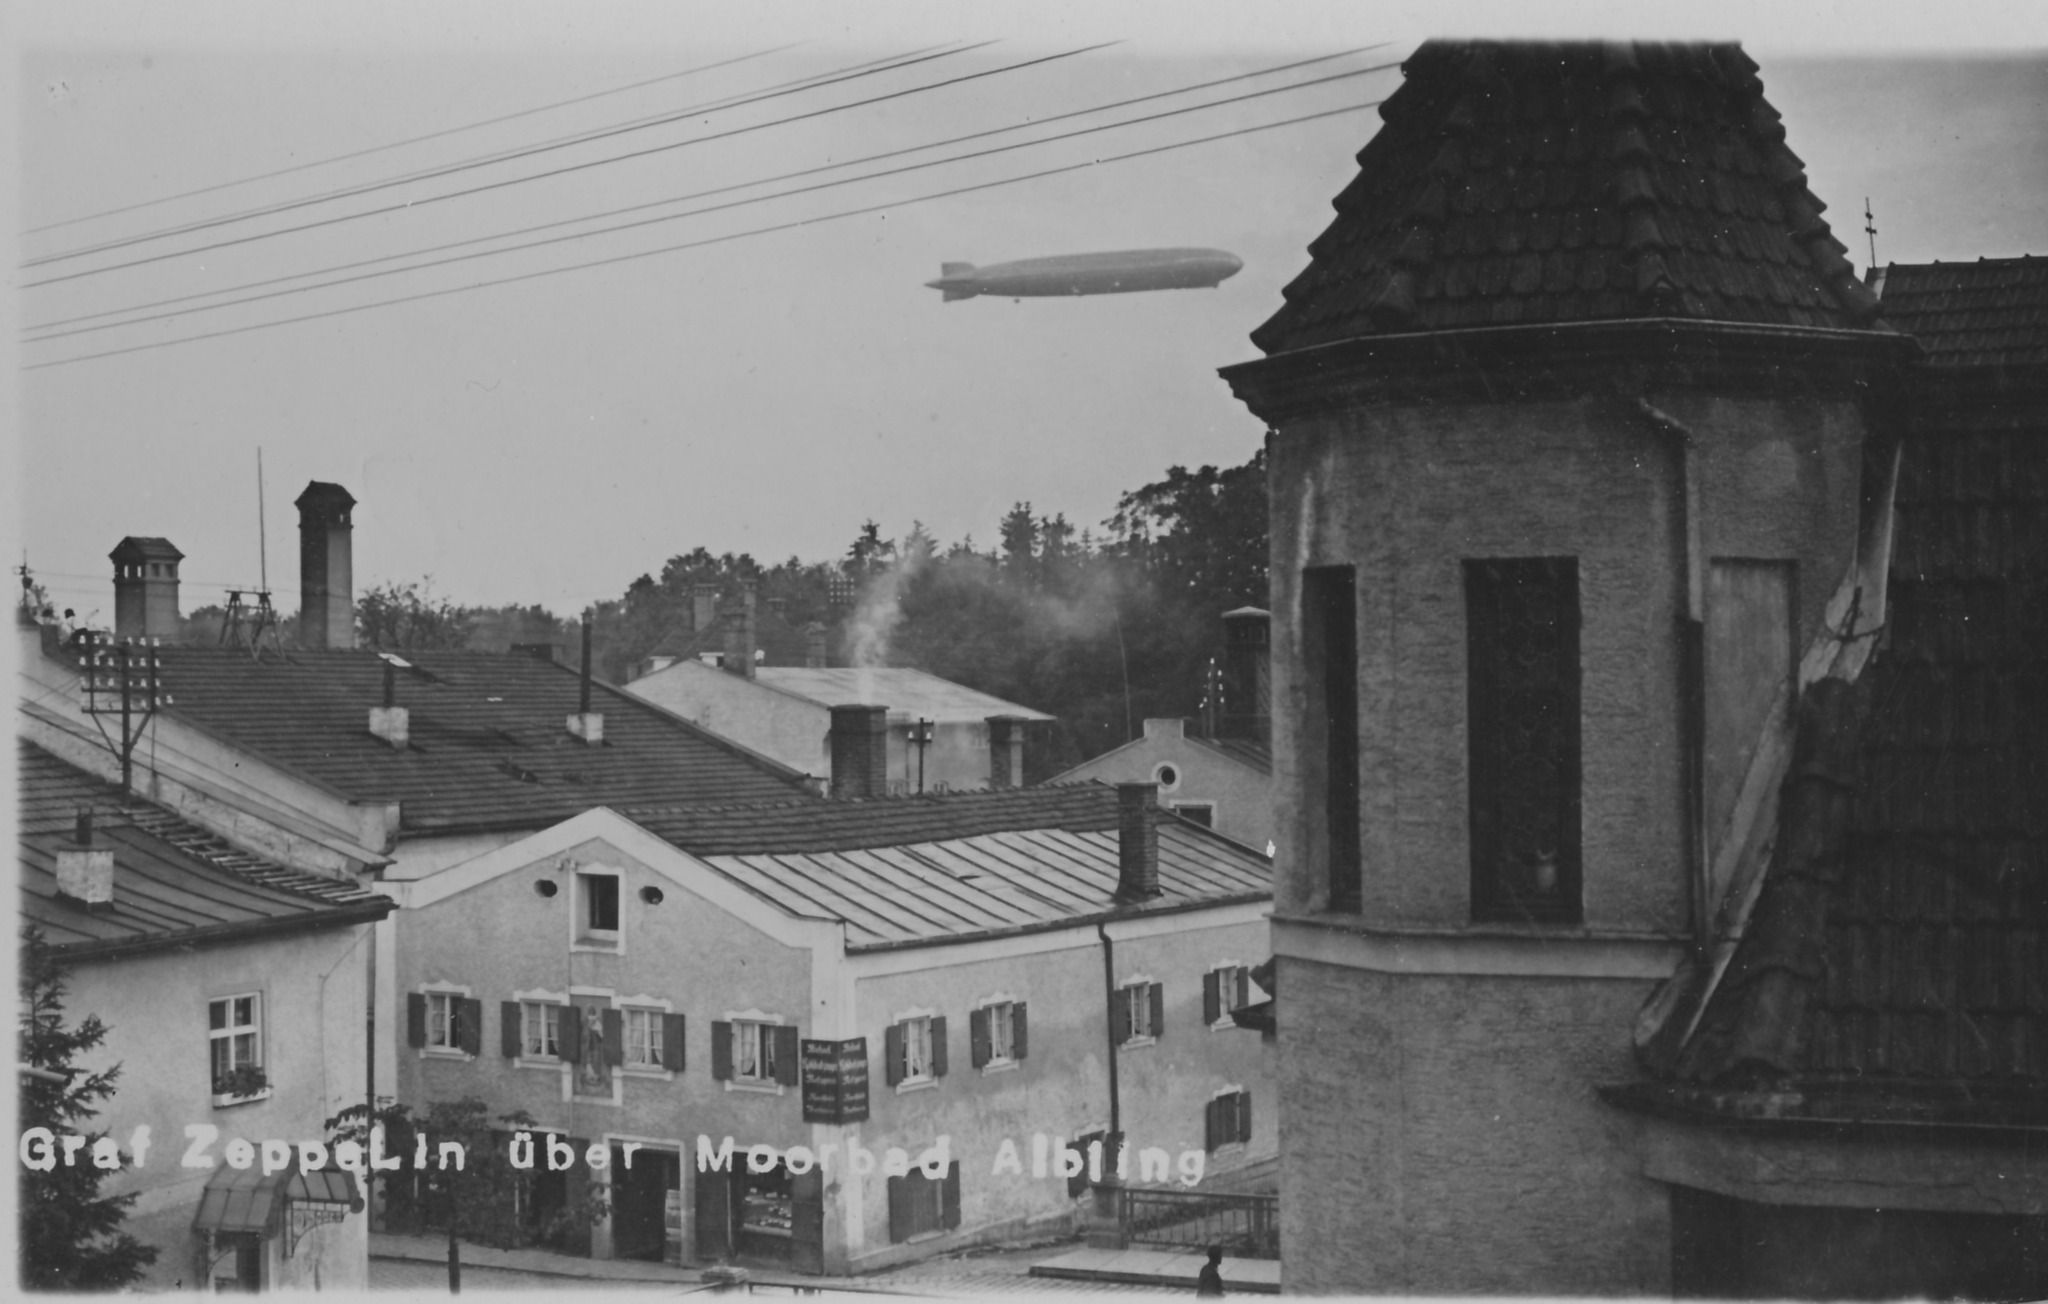 Zeppelin ueber Bad Aibling im Landkreis Rosenheim um 1900 herum